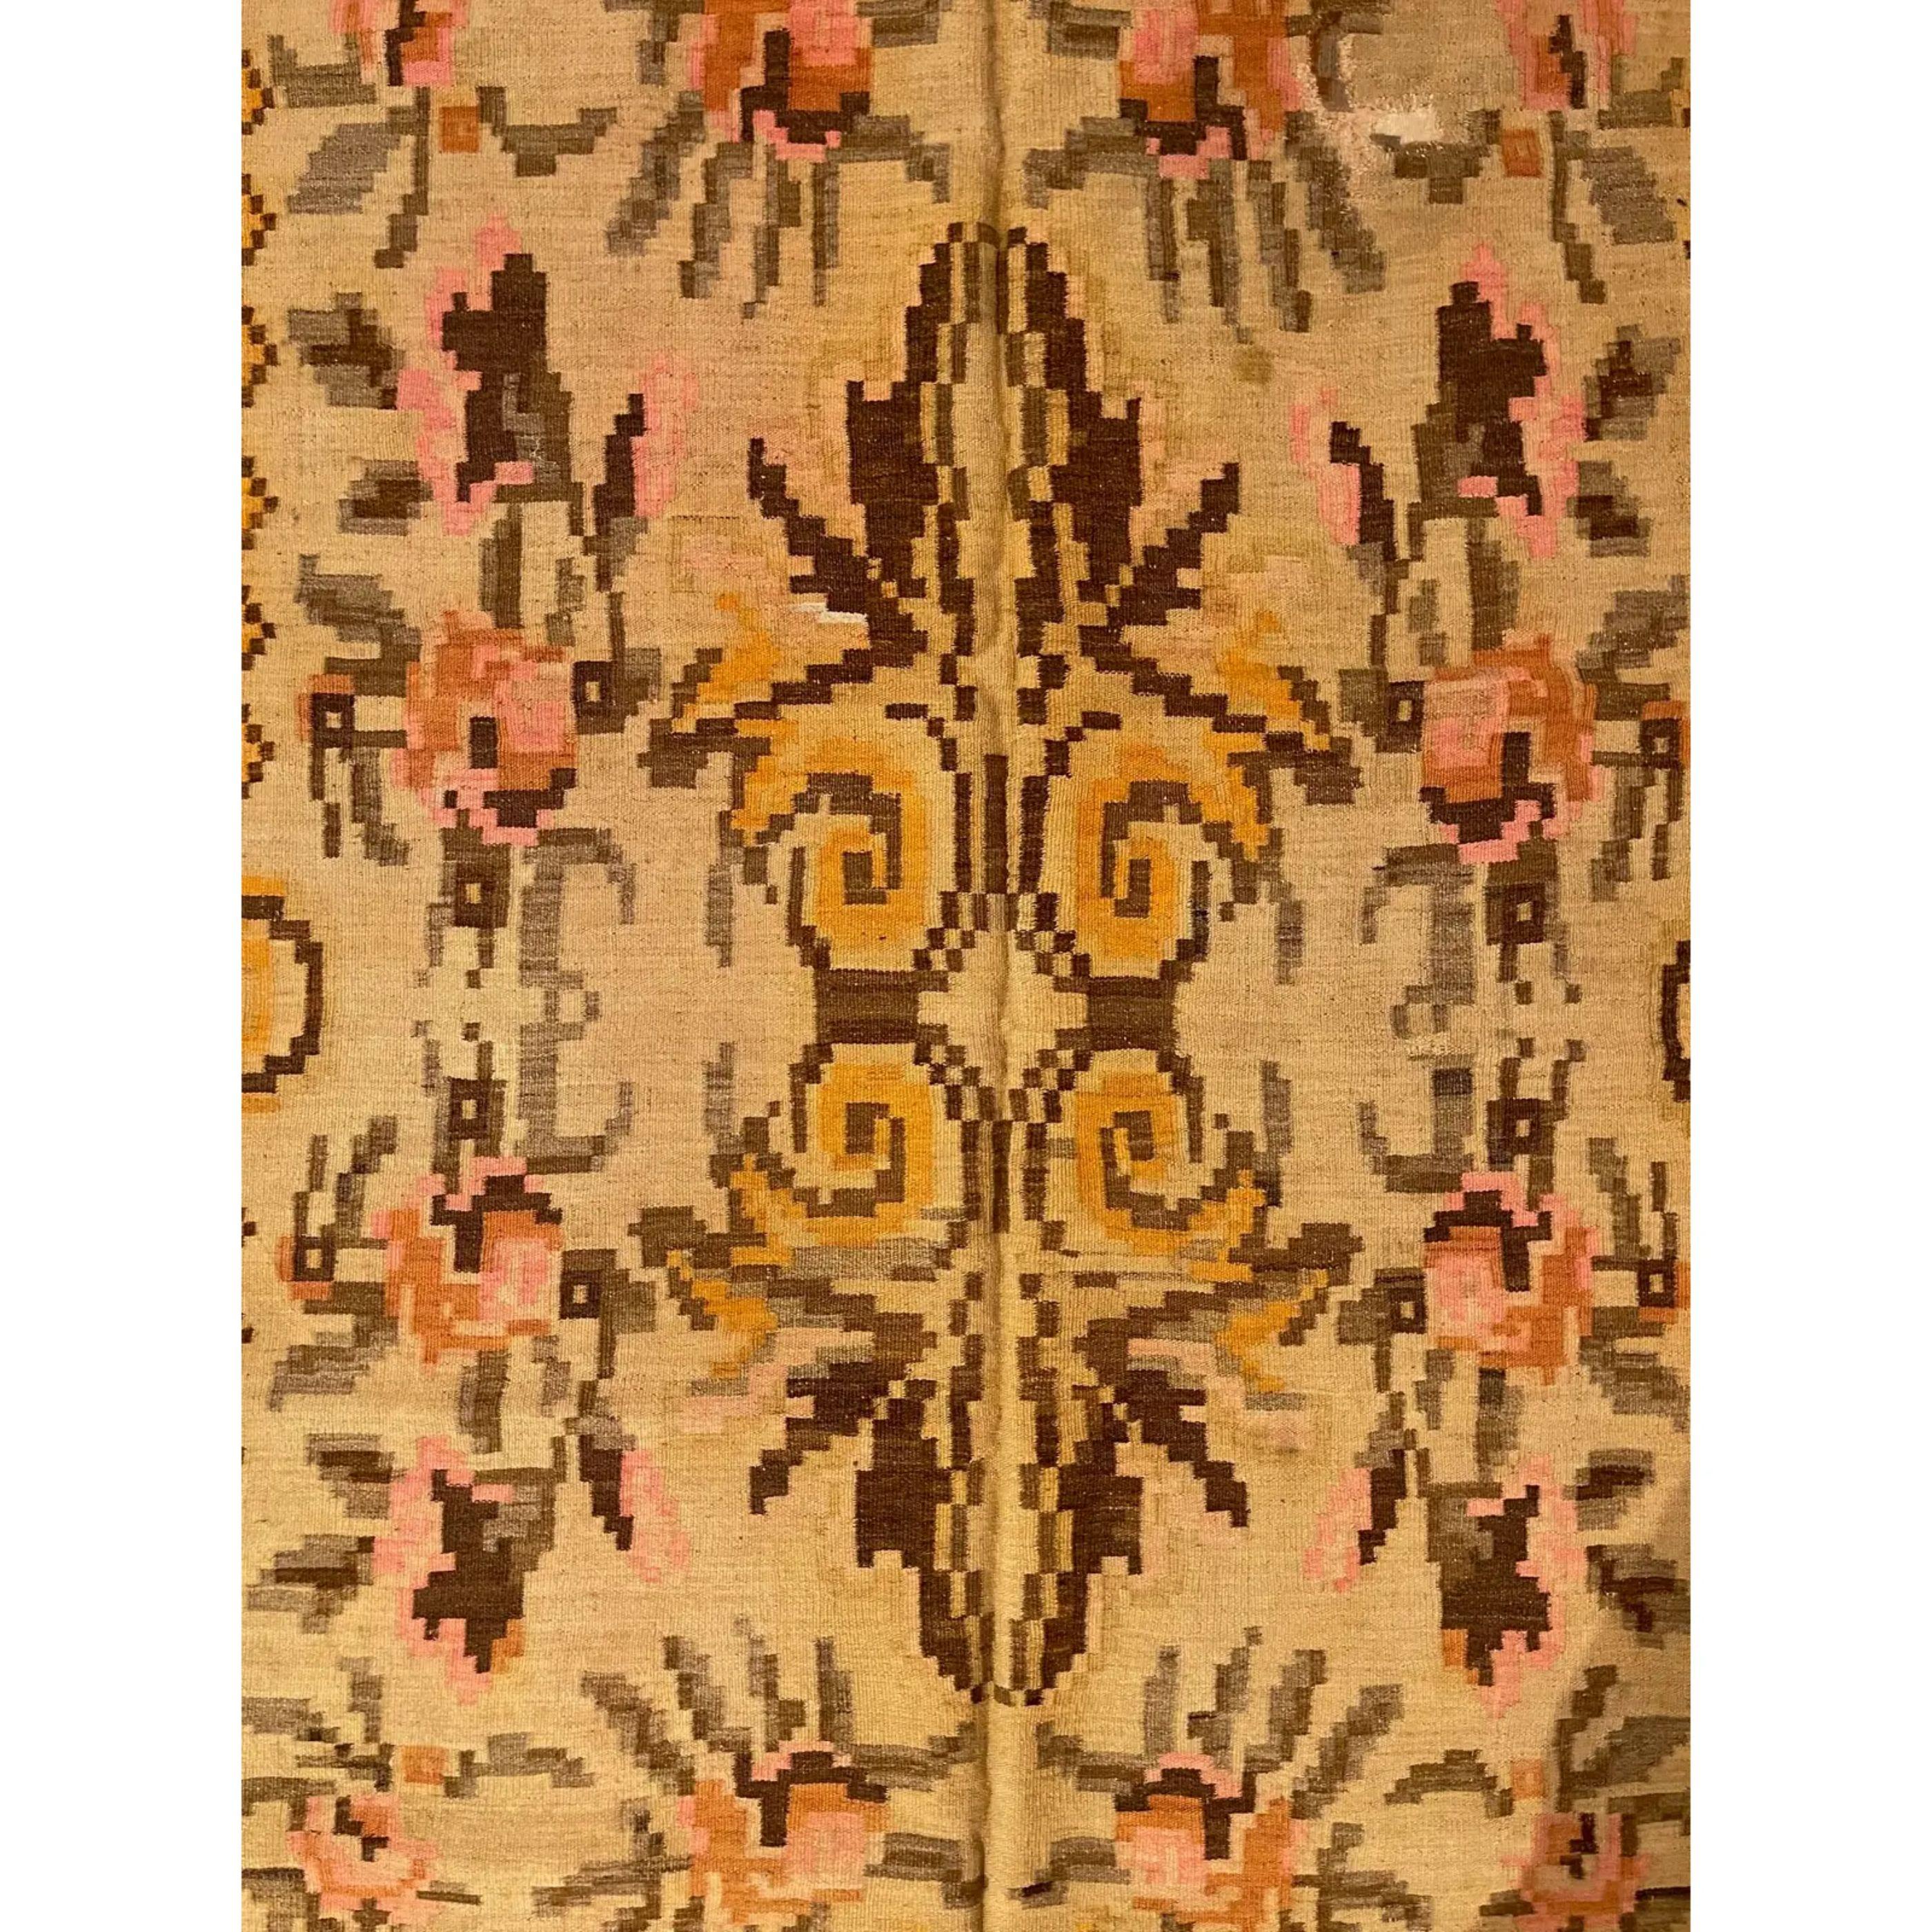 Les anciens Rug & Kilim de Bessarabie, qu'ils soient tissés en velours ou en tapisserie, comptent parmi les plus beaux tapis produits en Europe. La plupart des kilims de Bessarabie ont été tissés entre le milieu et la fin du XIXe siècle, bien que